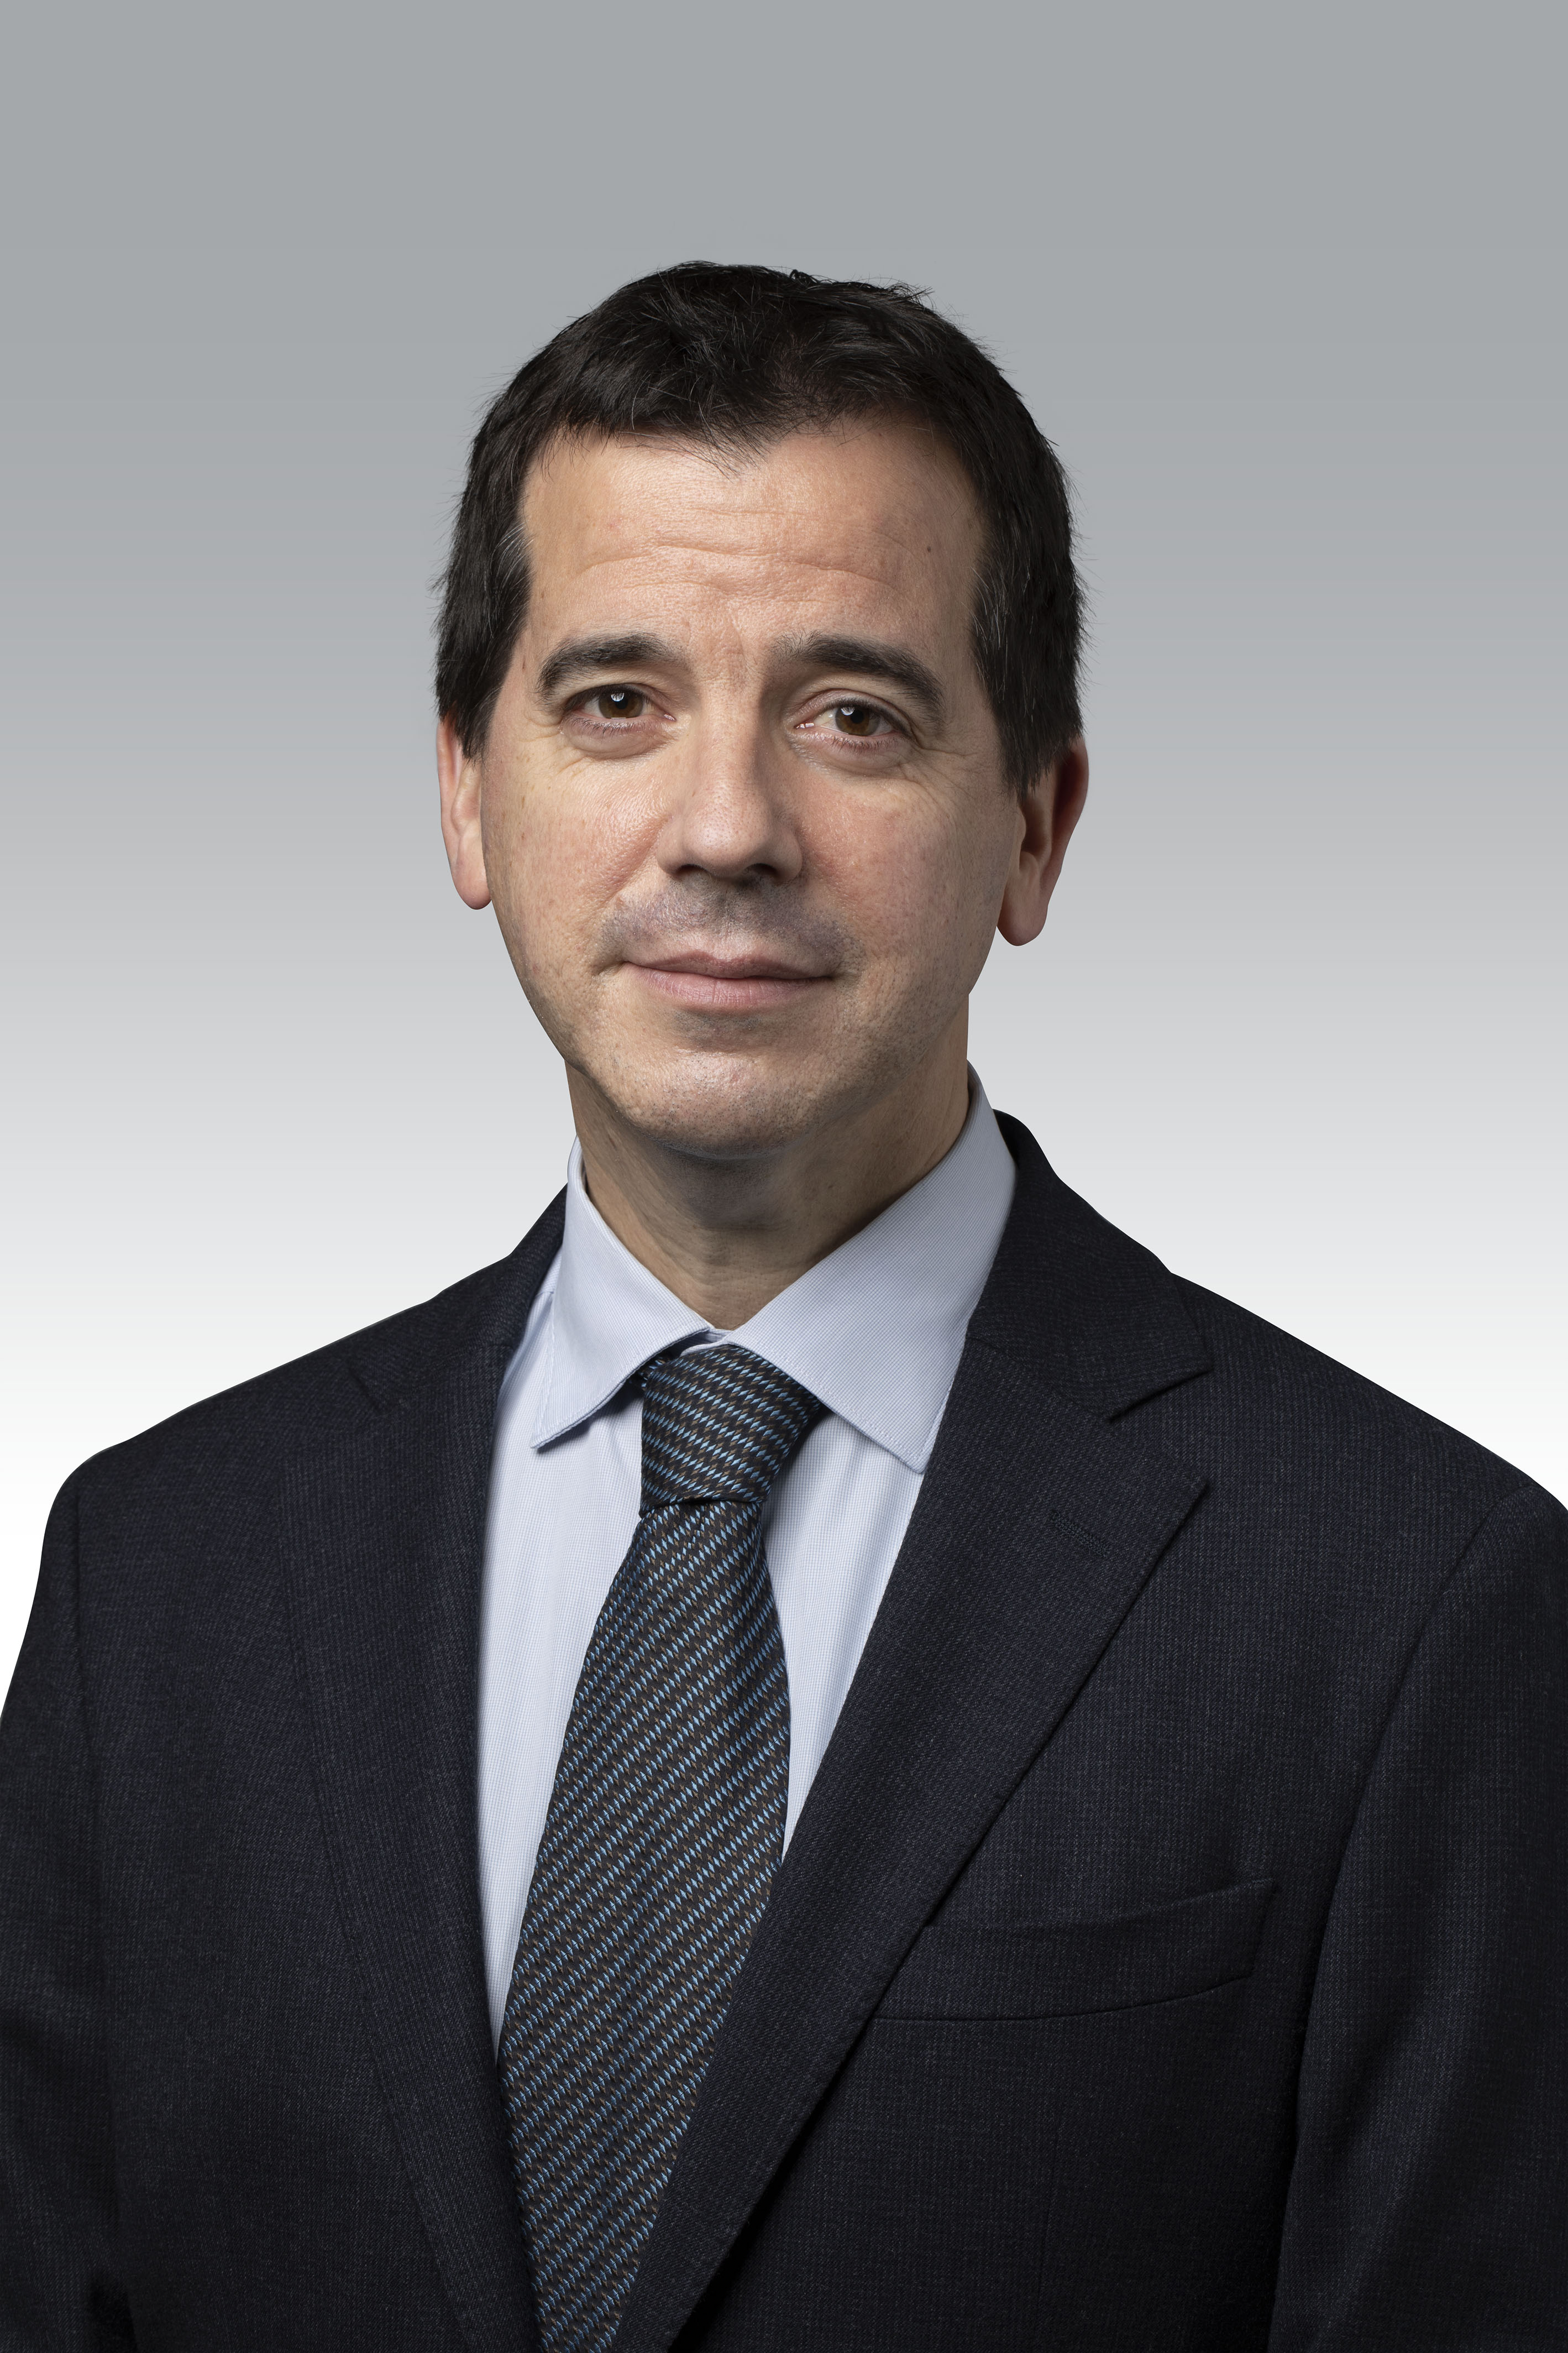 El consejero de Desarrollo Económico y Empresarial, Mikel Irujo Amezaga.